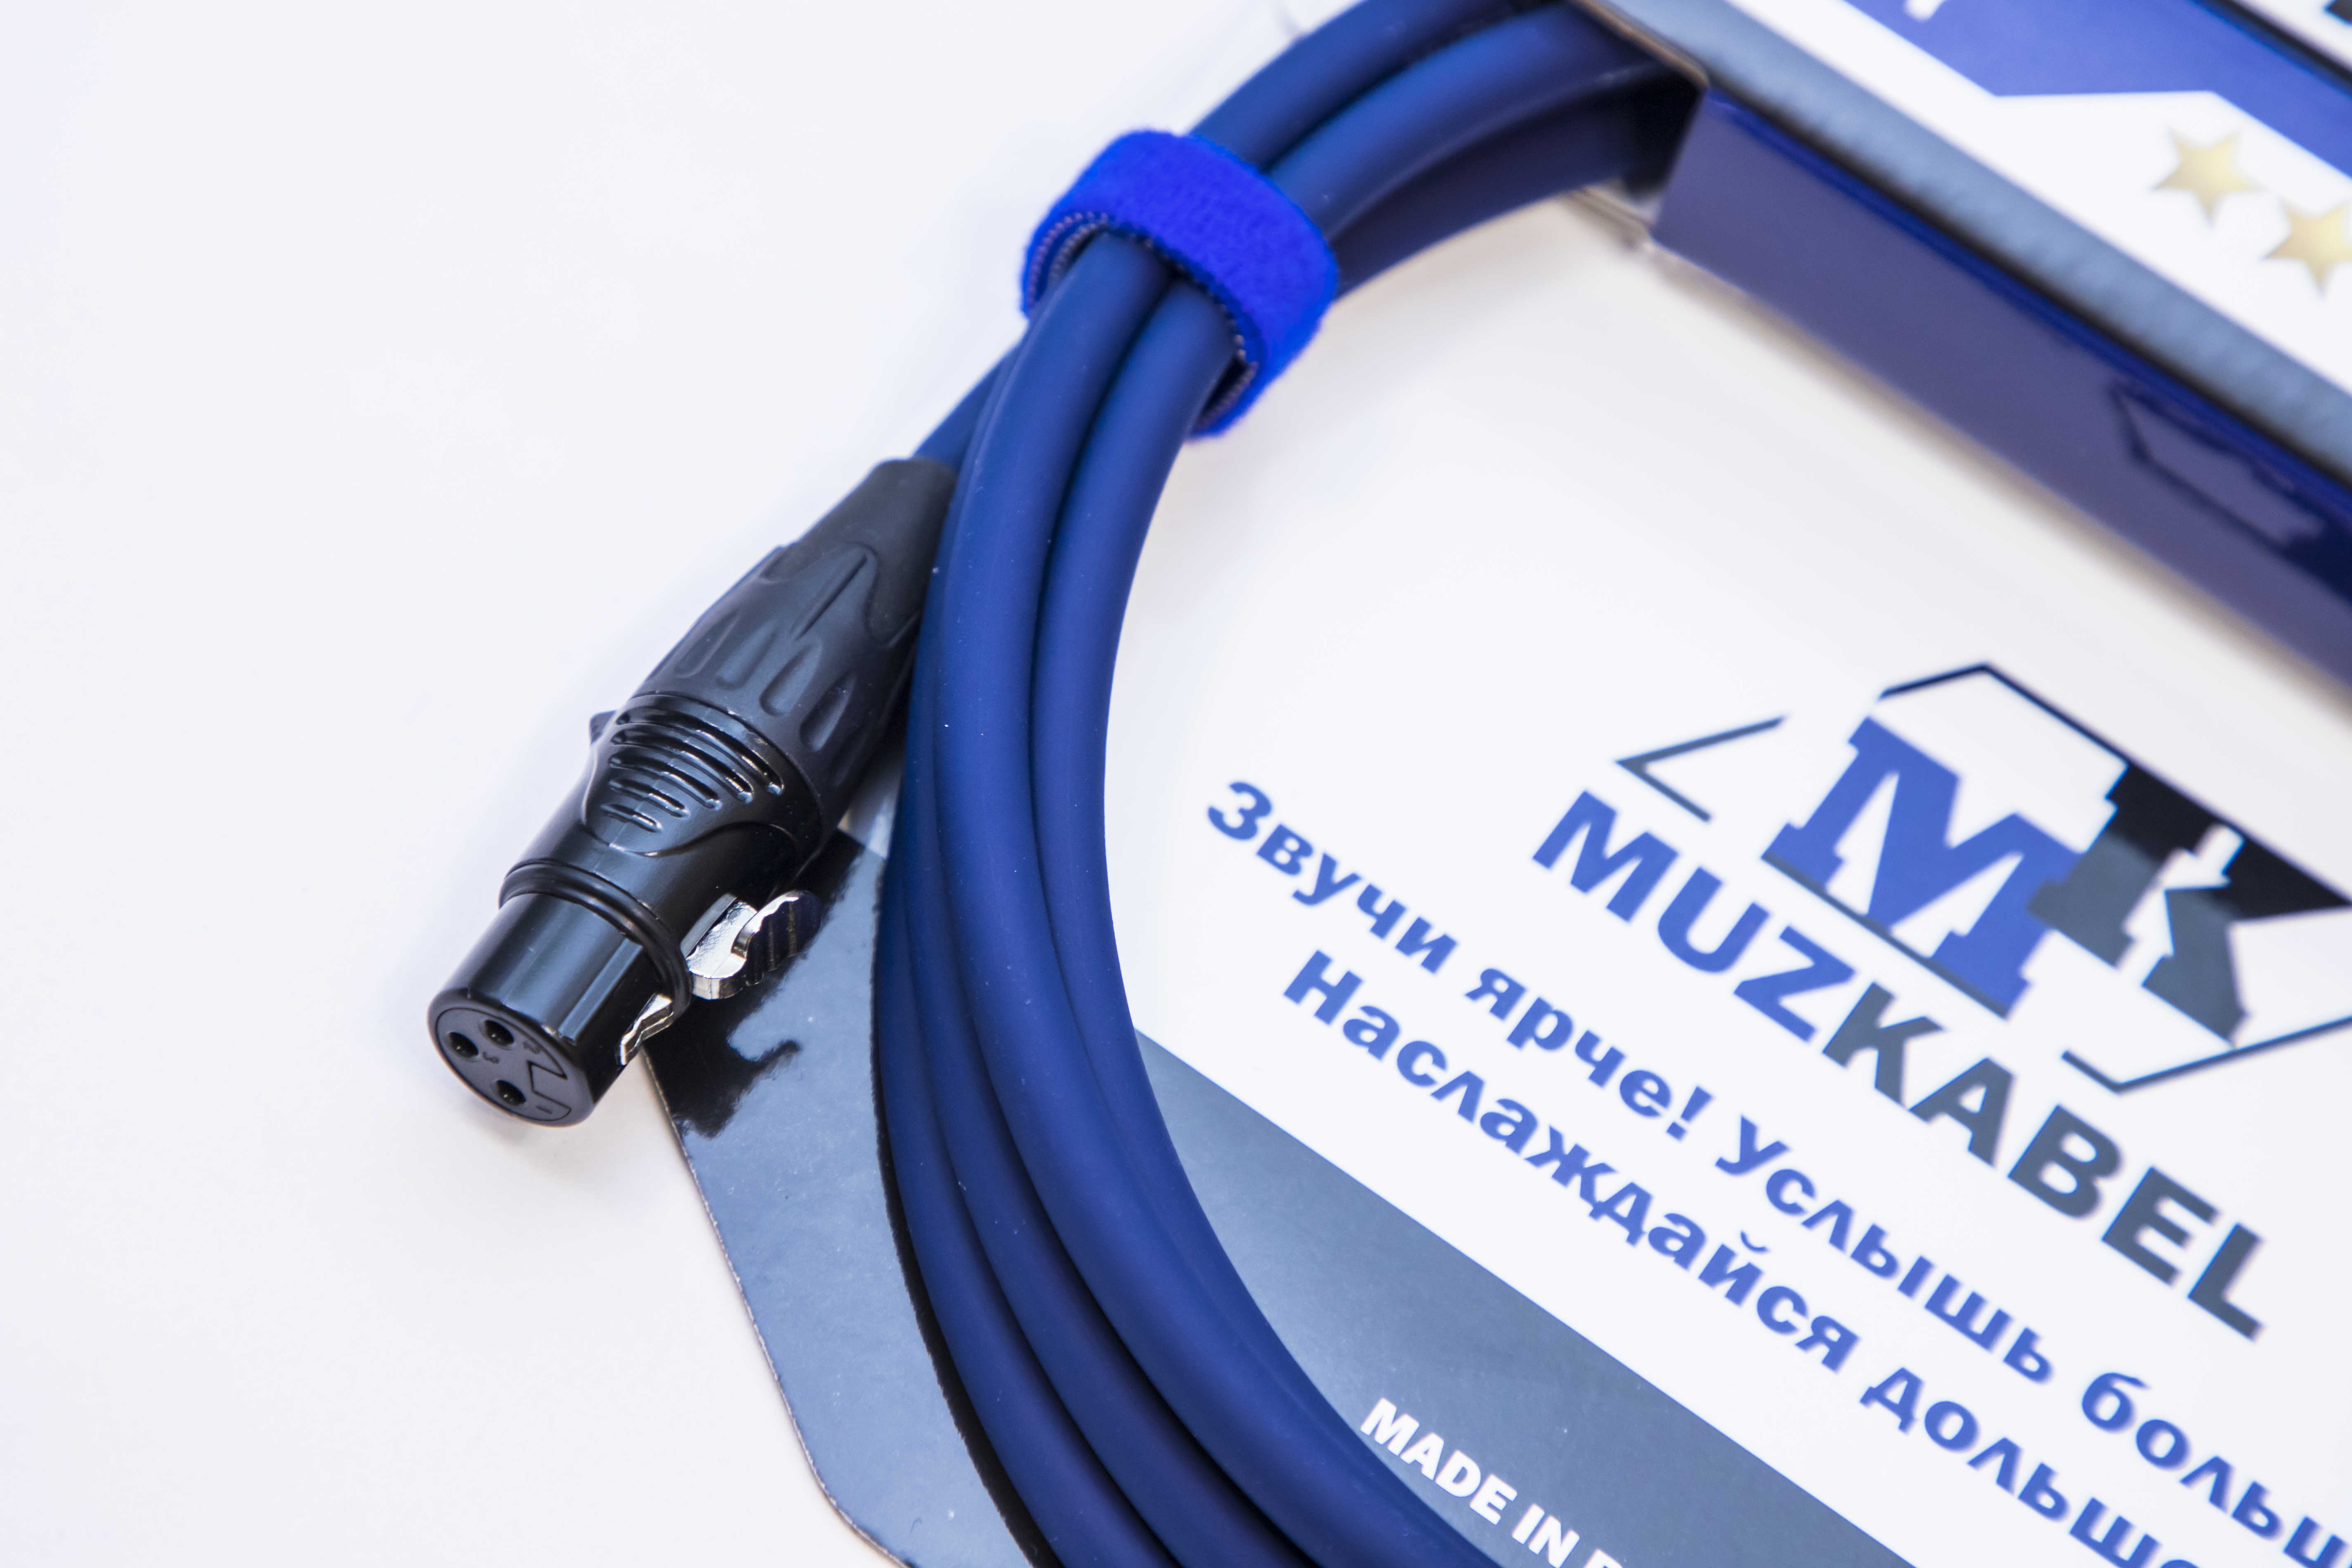 Микрофонный кабель MUZKABEL XJFMK1S - 2 метра, JACK (моно) - XLR (мама)